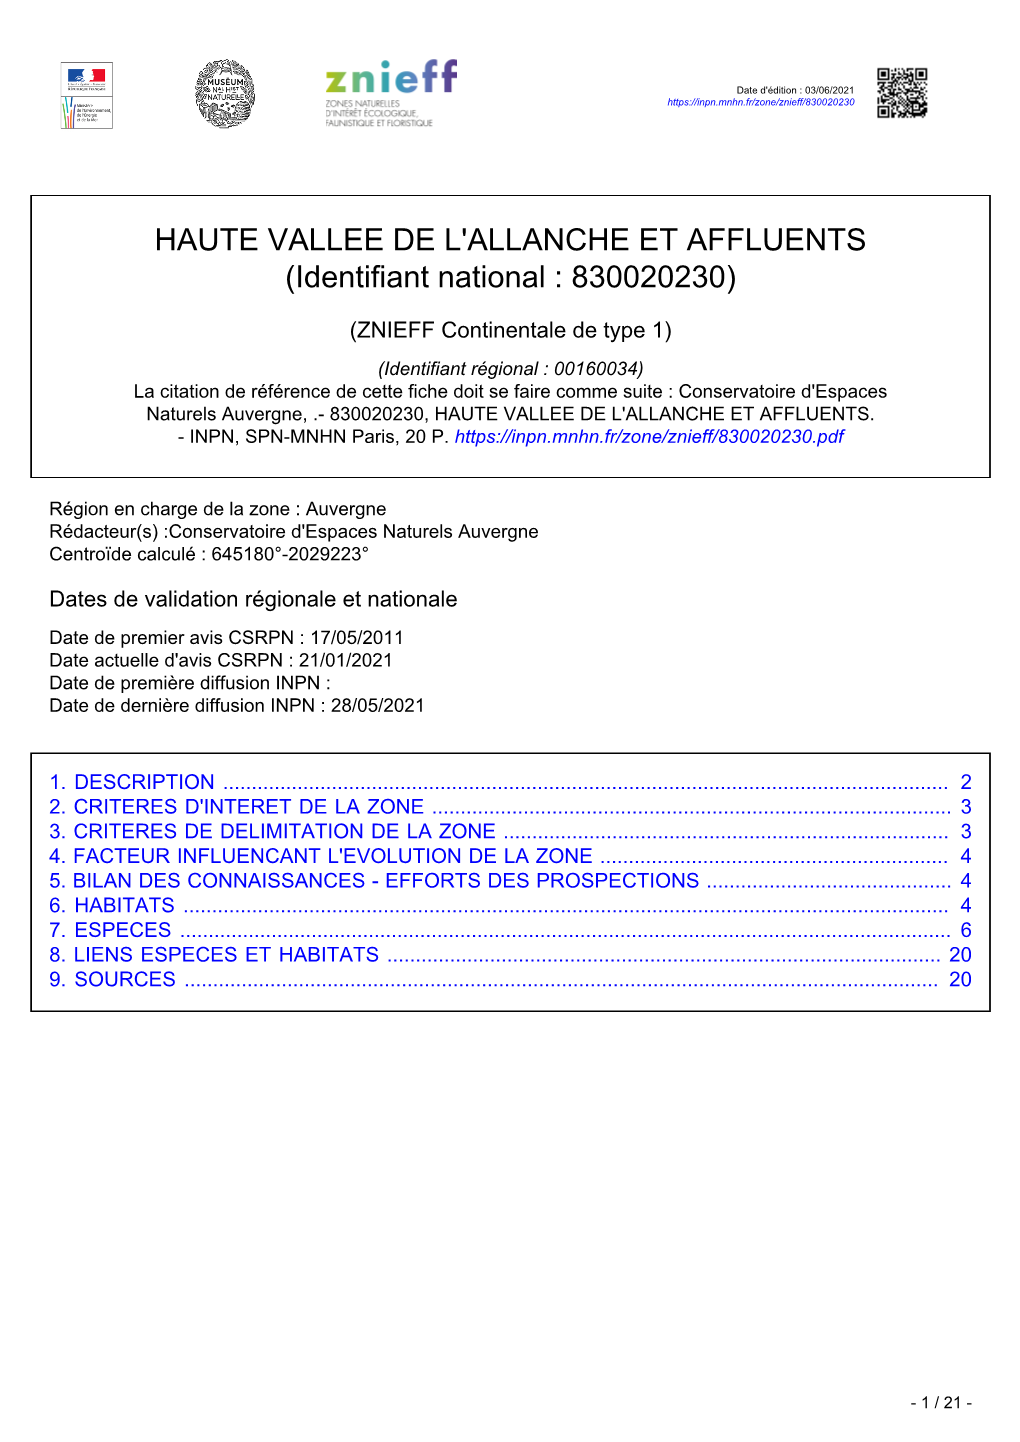 HAUTE VALLEE DE L'allanche ET AFFLUENTS (Identifiant National : 830020230)